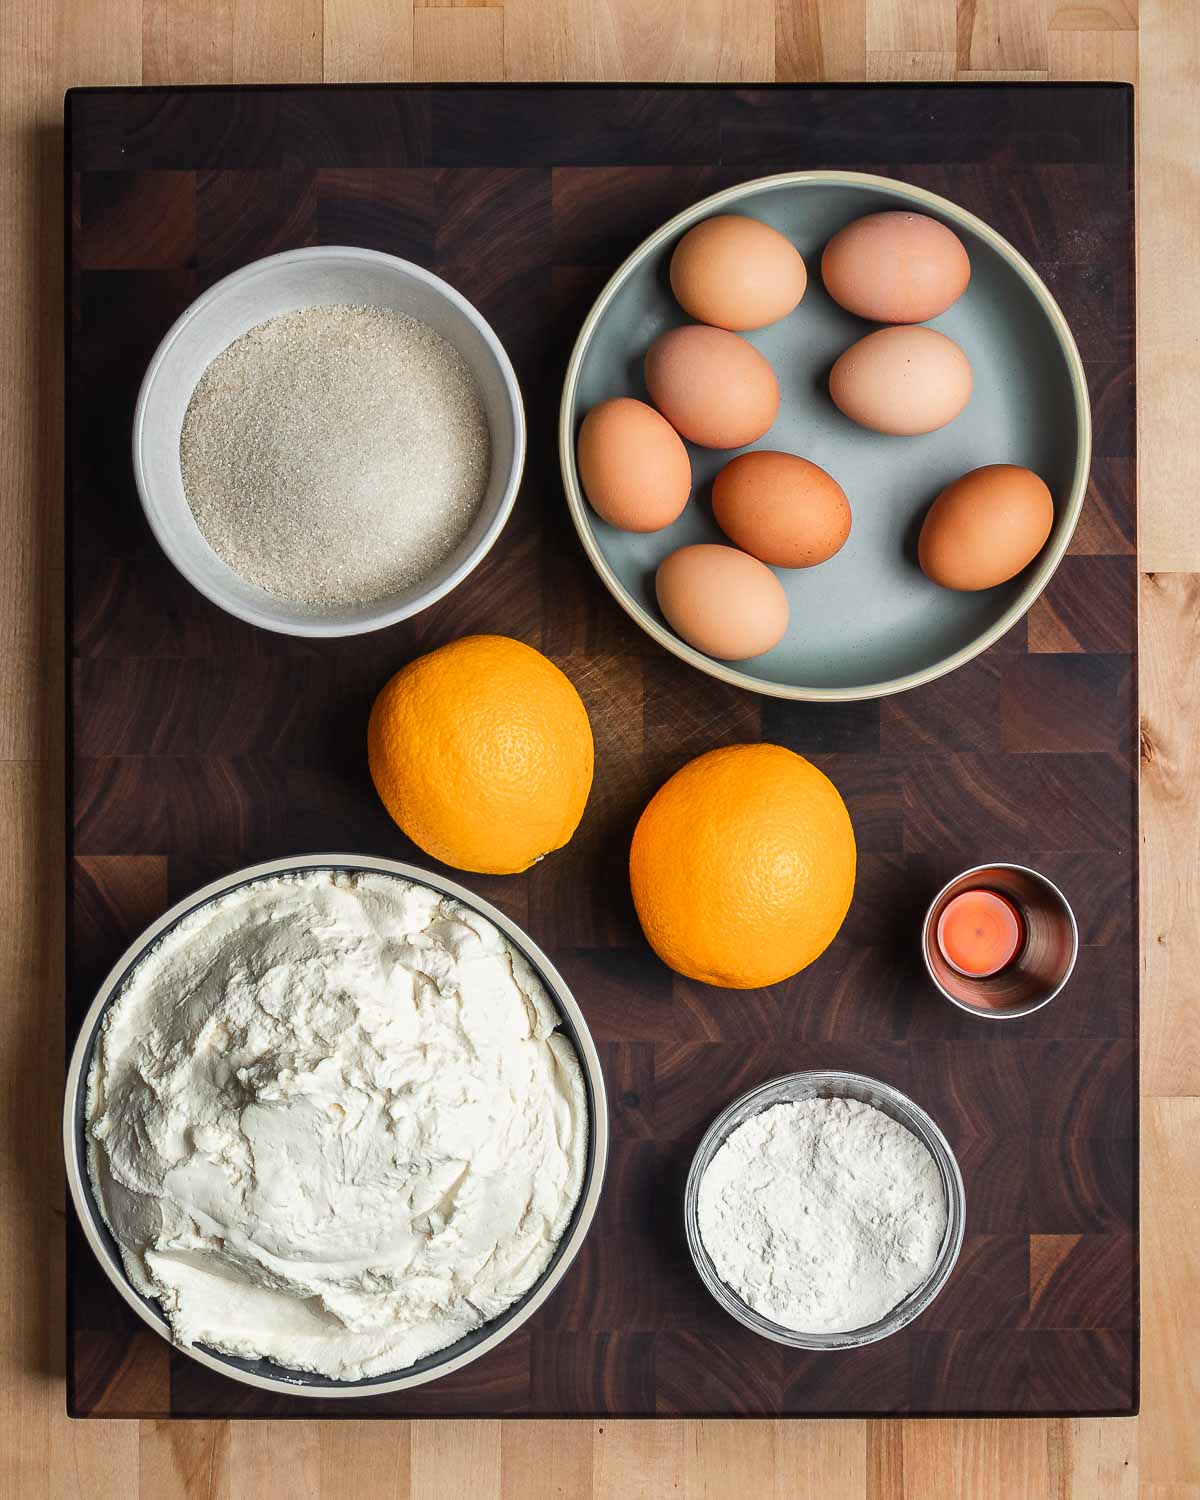 Ingredients shown: sugar, eggs, oranges, vanilla, ricotta, and flour.